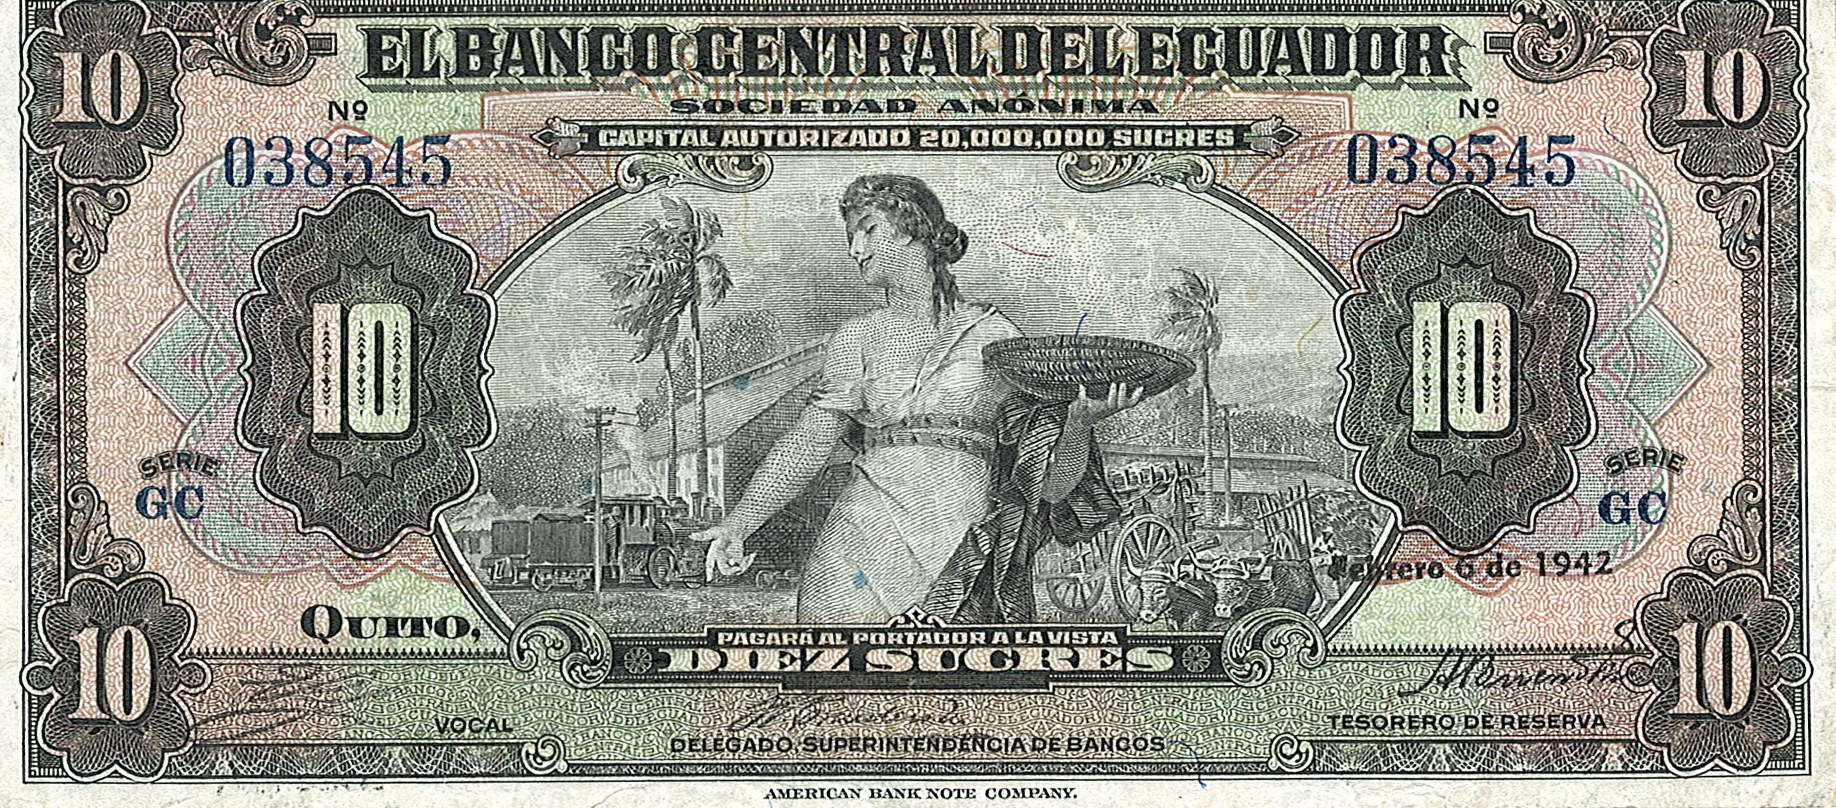 Banco Central Del Ecuador, 10 Sucres, Эквадор